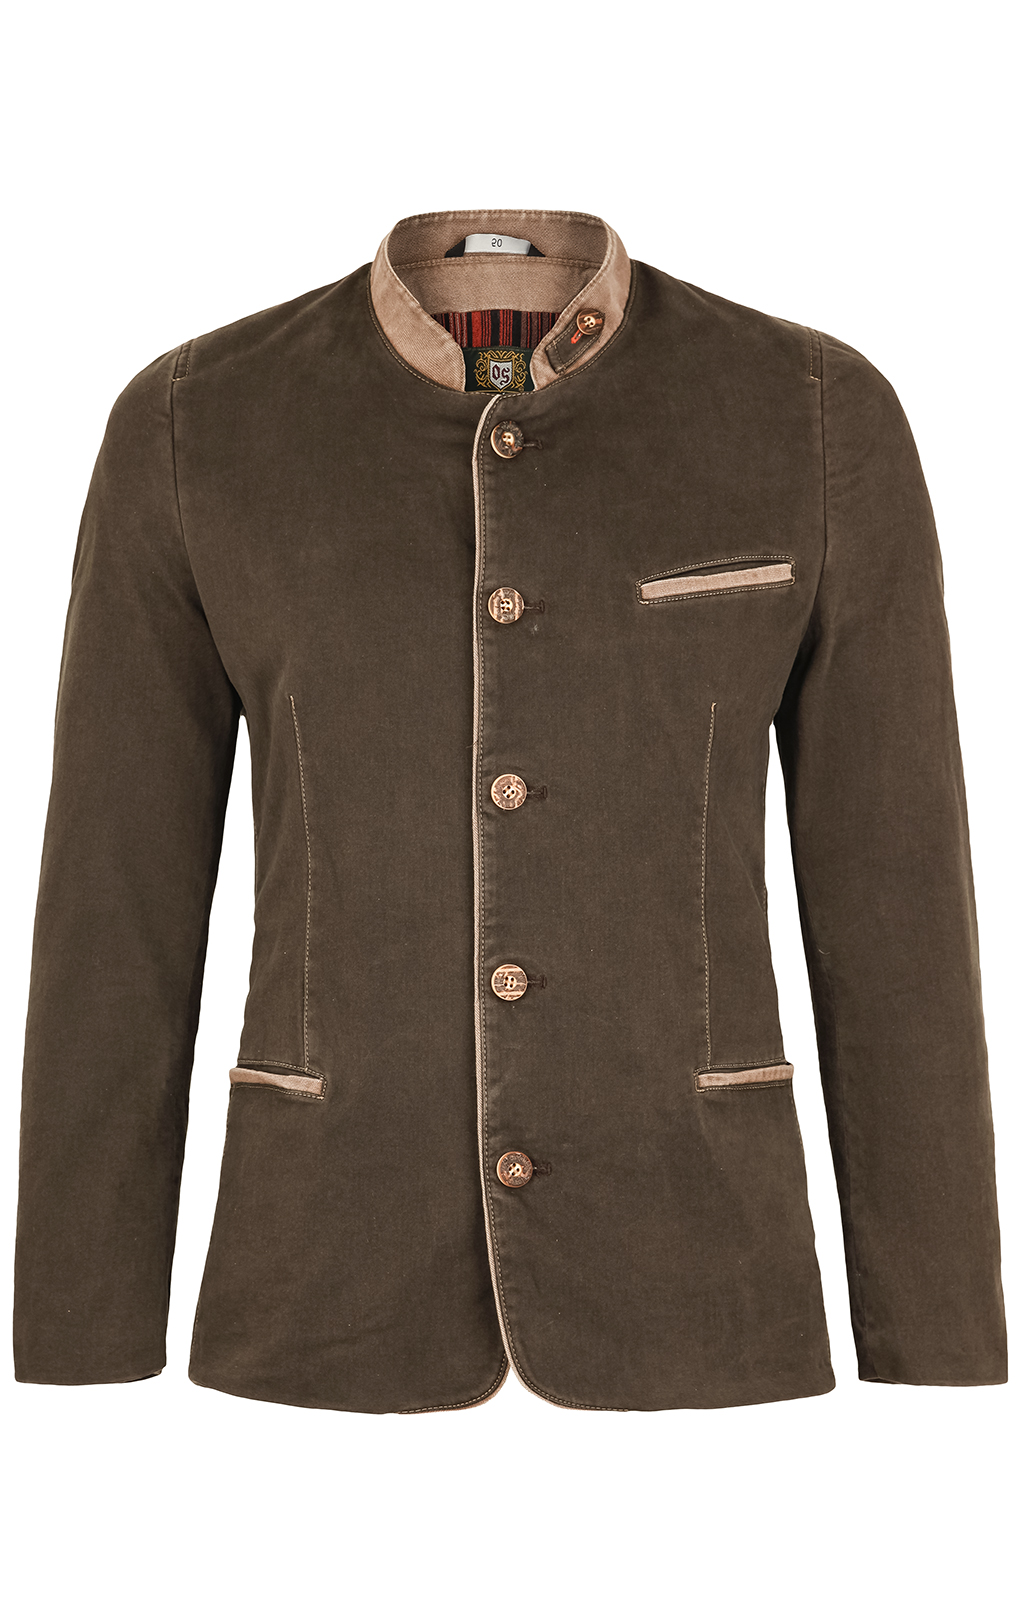 weitere Bilder von German traditional jacket brown